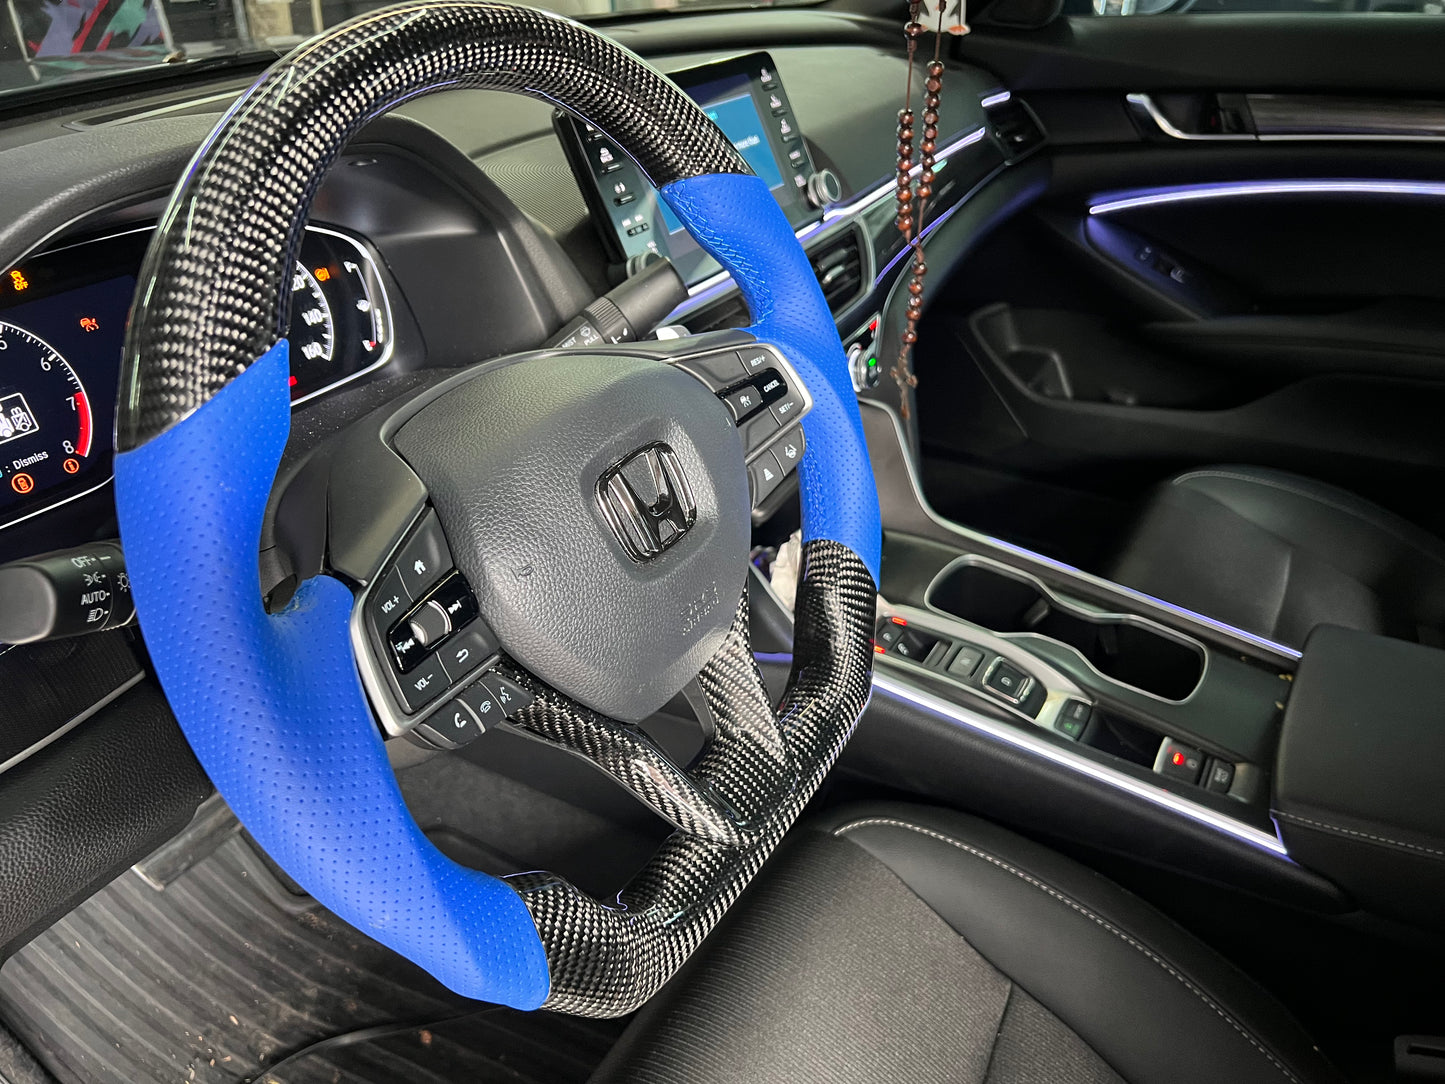 Carbon Fiber Steering Wheel (Custom Orders)